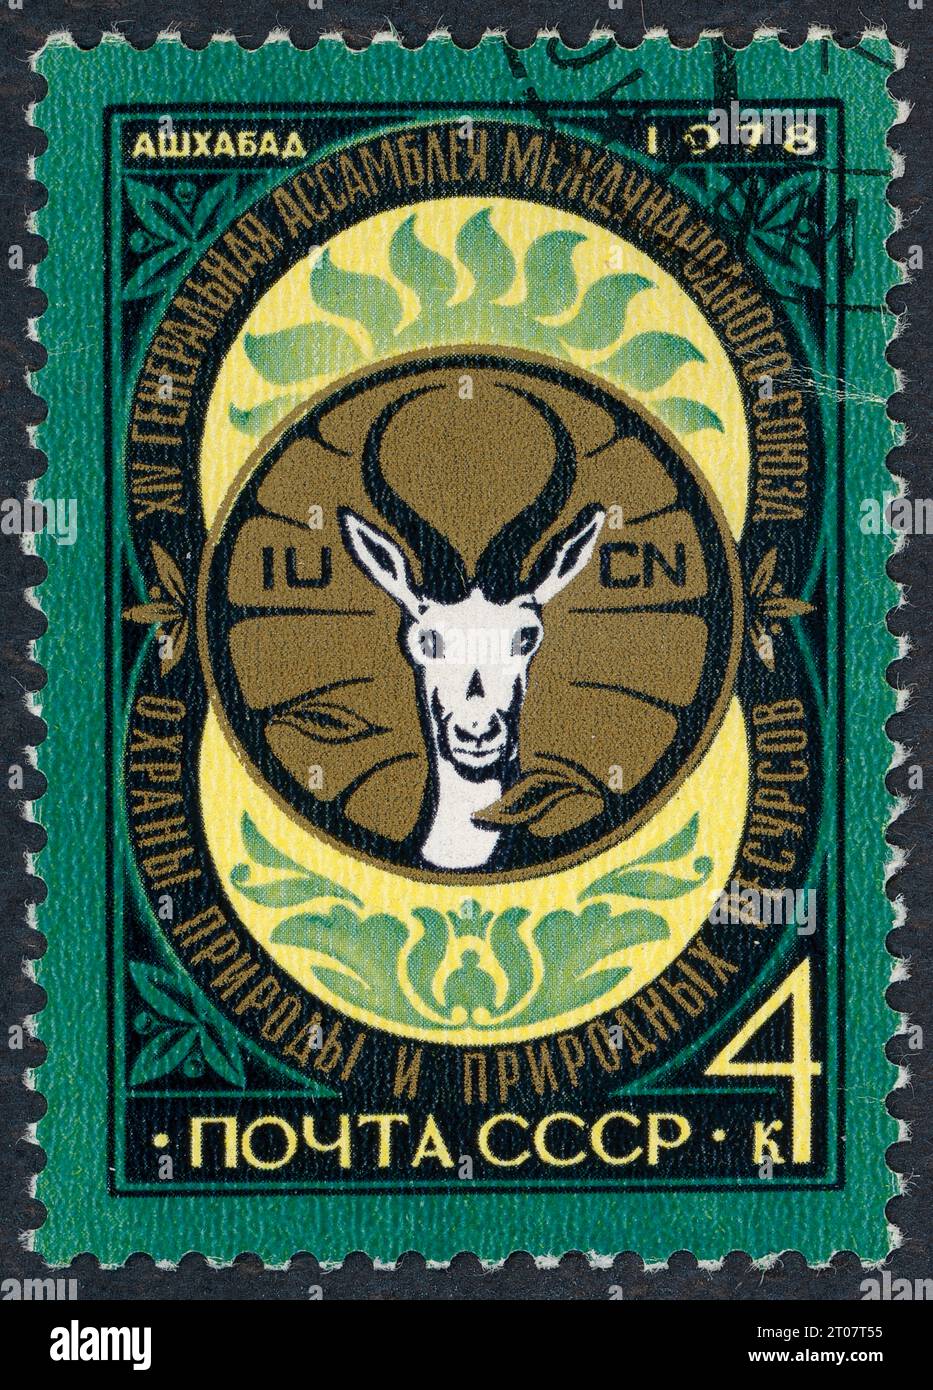 Timbre 1978 : XIVe Assemblée générale de l'Union internationale pour la conservation de la nature et de ses ressources (UICN) (Achgabat, URSS, aujourd'hui Turkménistan). Timbre-poste émis en URSS en 1978. Banque D'Images